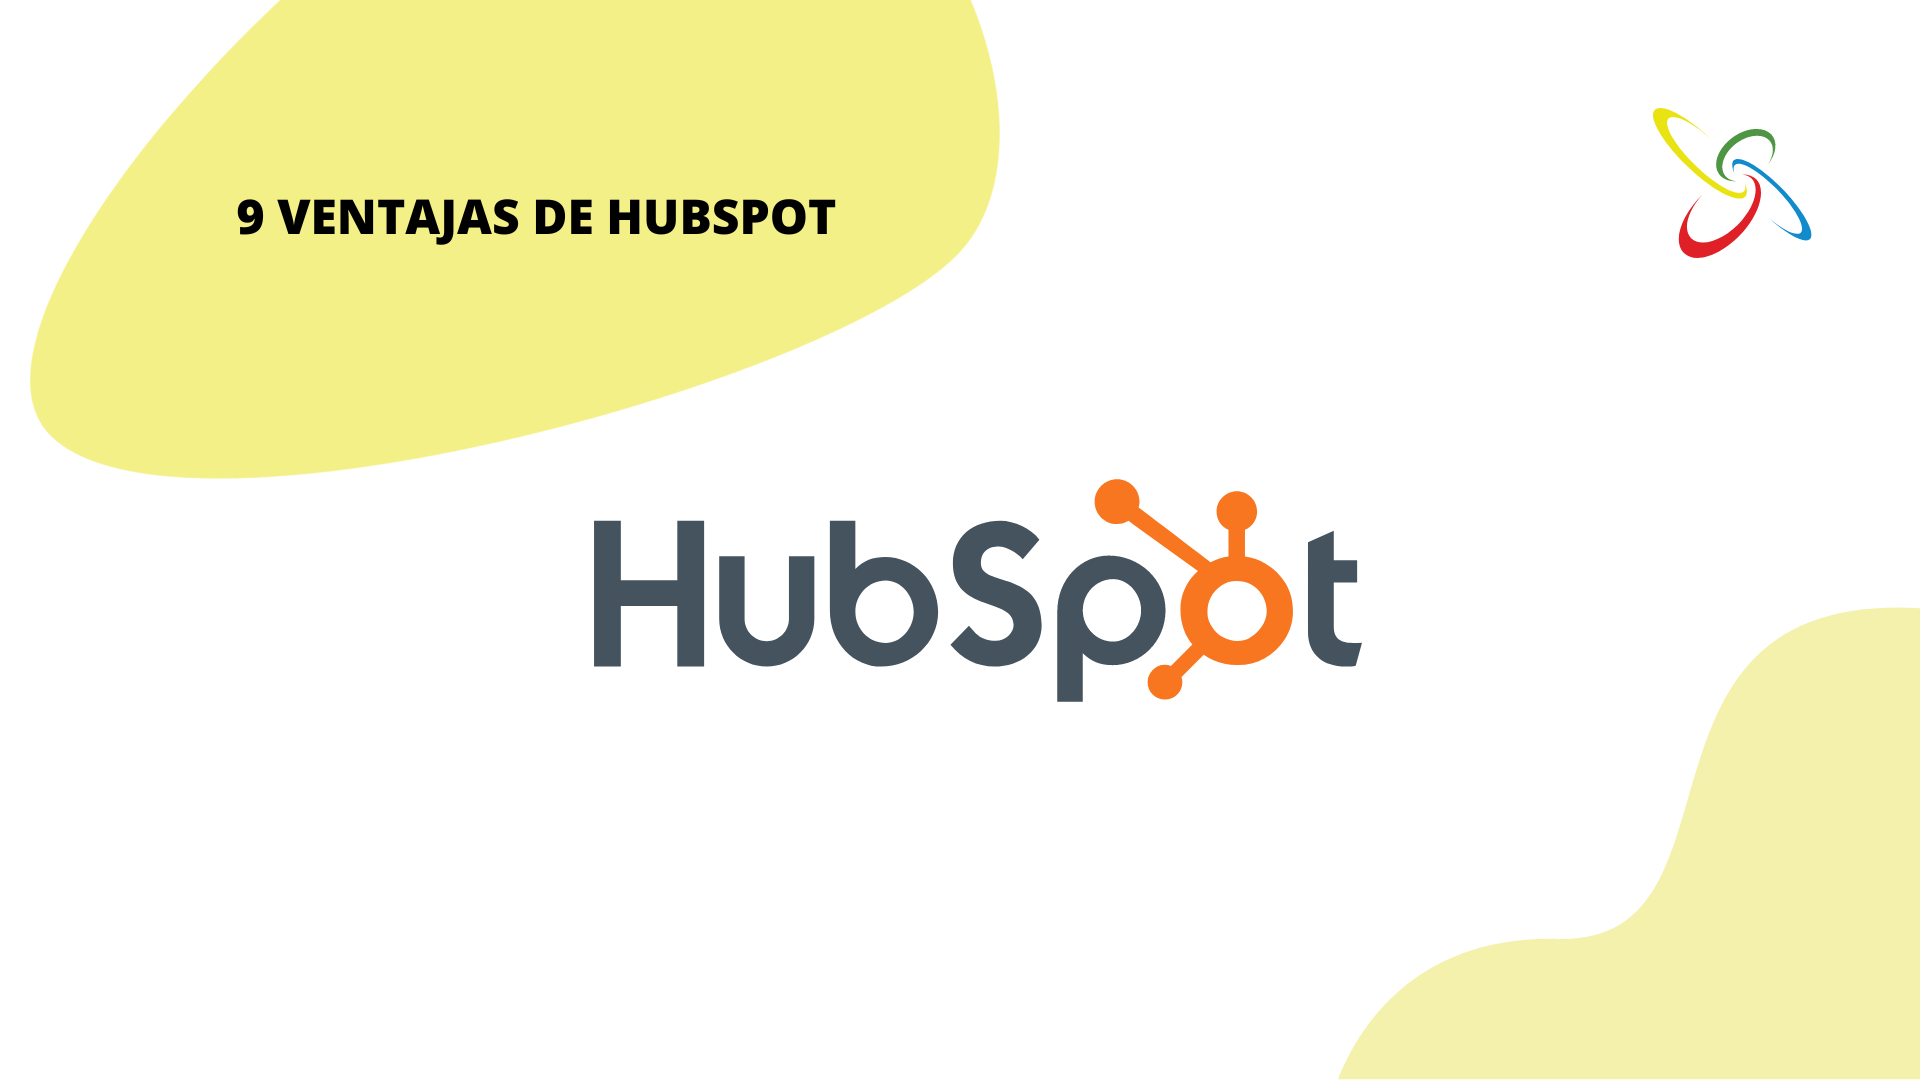 9 ventajas de HubSpot